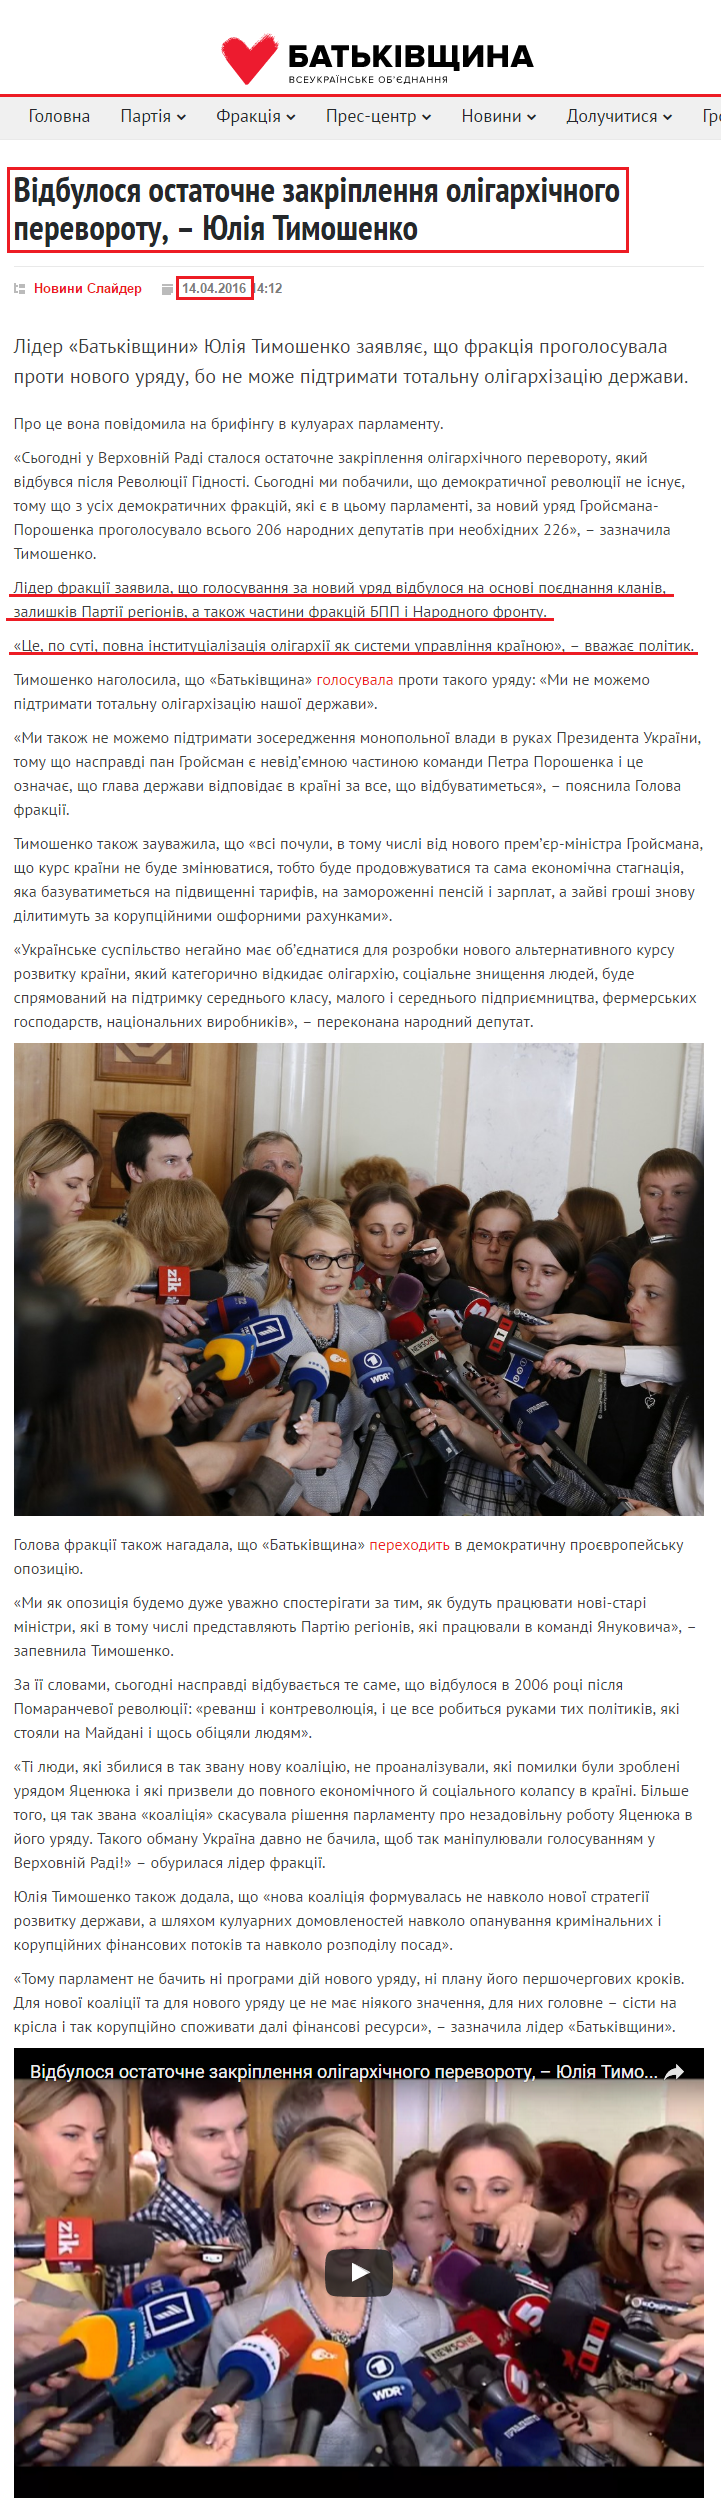 http://ba.org.ua/vidbulosya-ostanochne-zakriplennya-oligarxichnogo-perevorotu-yuliya-timoshenko/